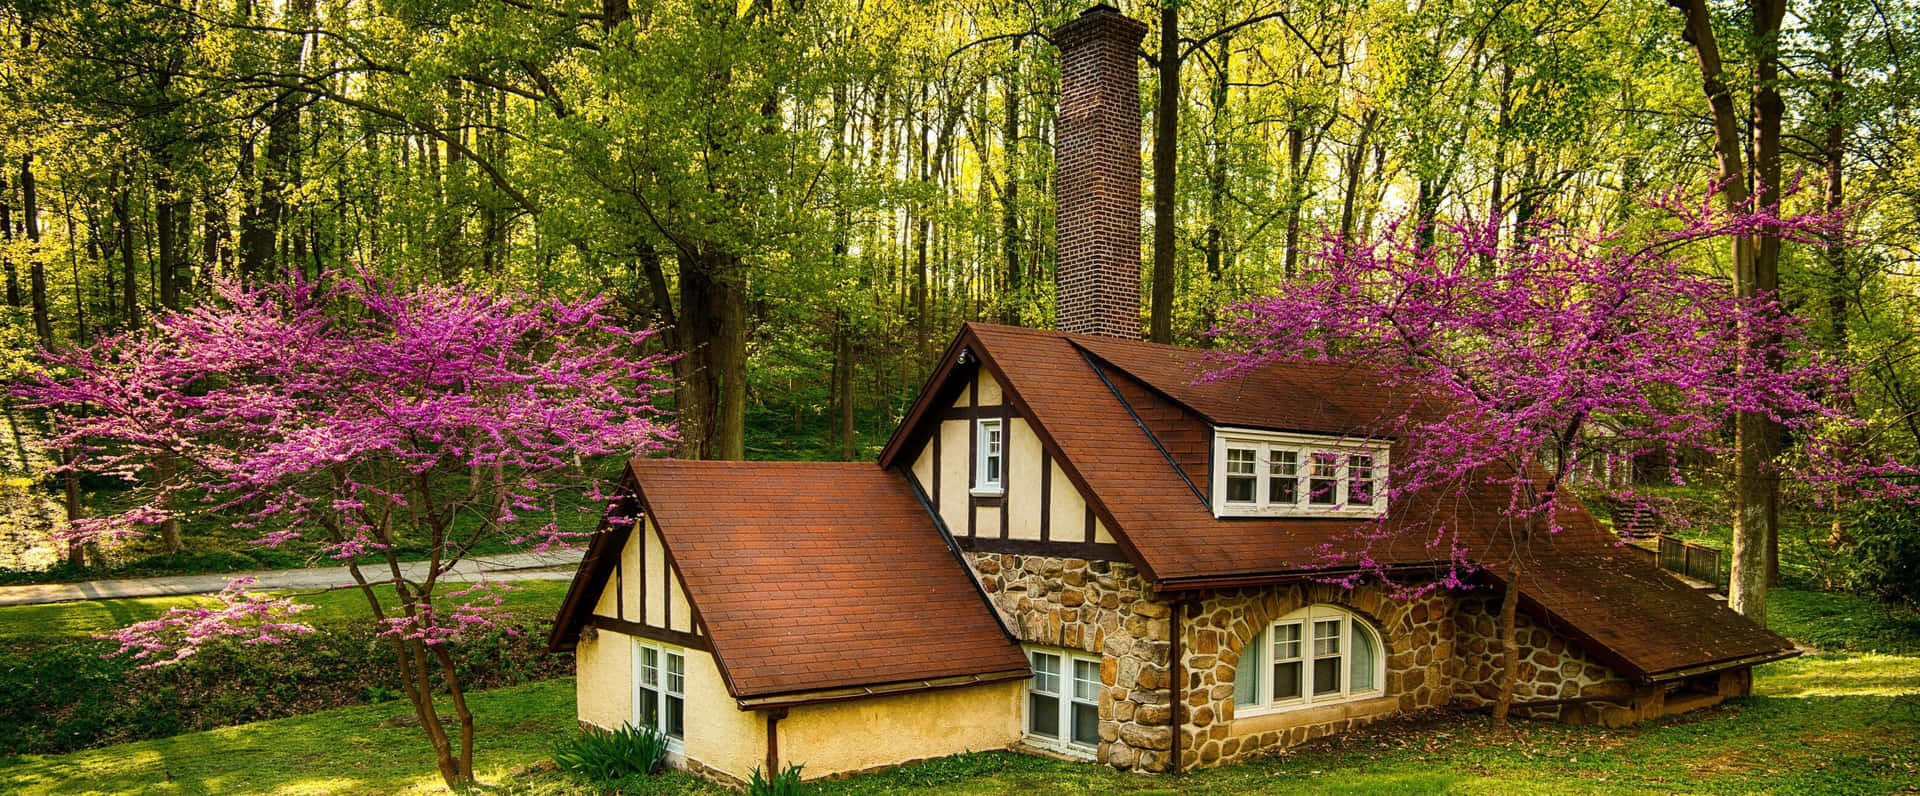 Enchanting Forest Cottage Springtime Wallpaper